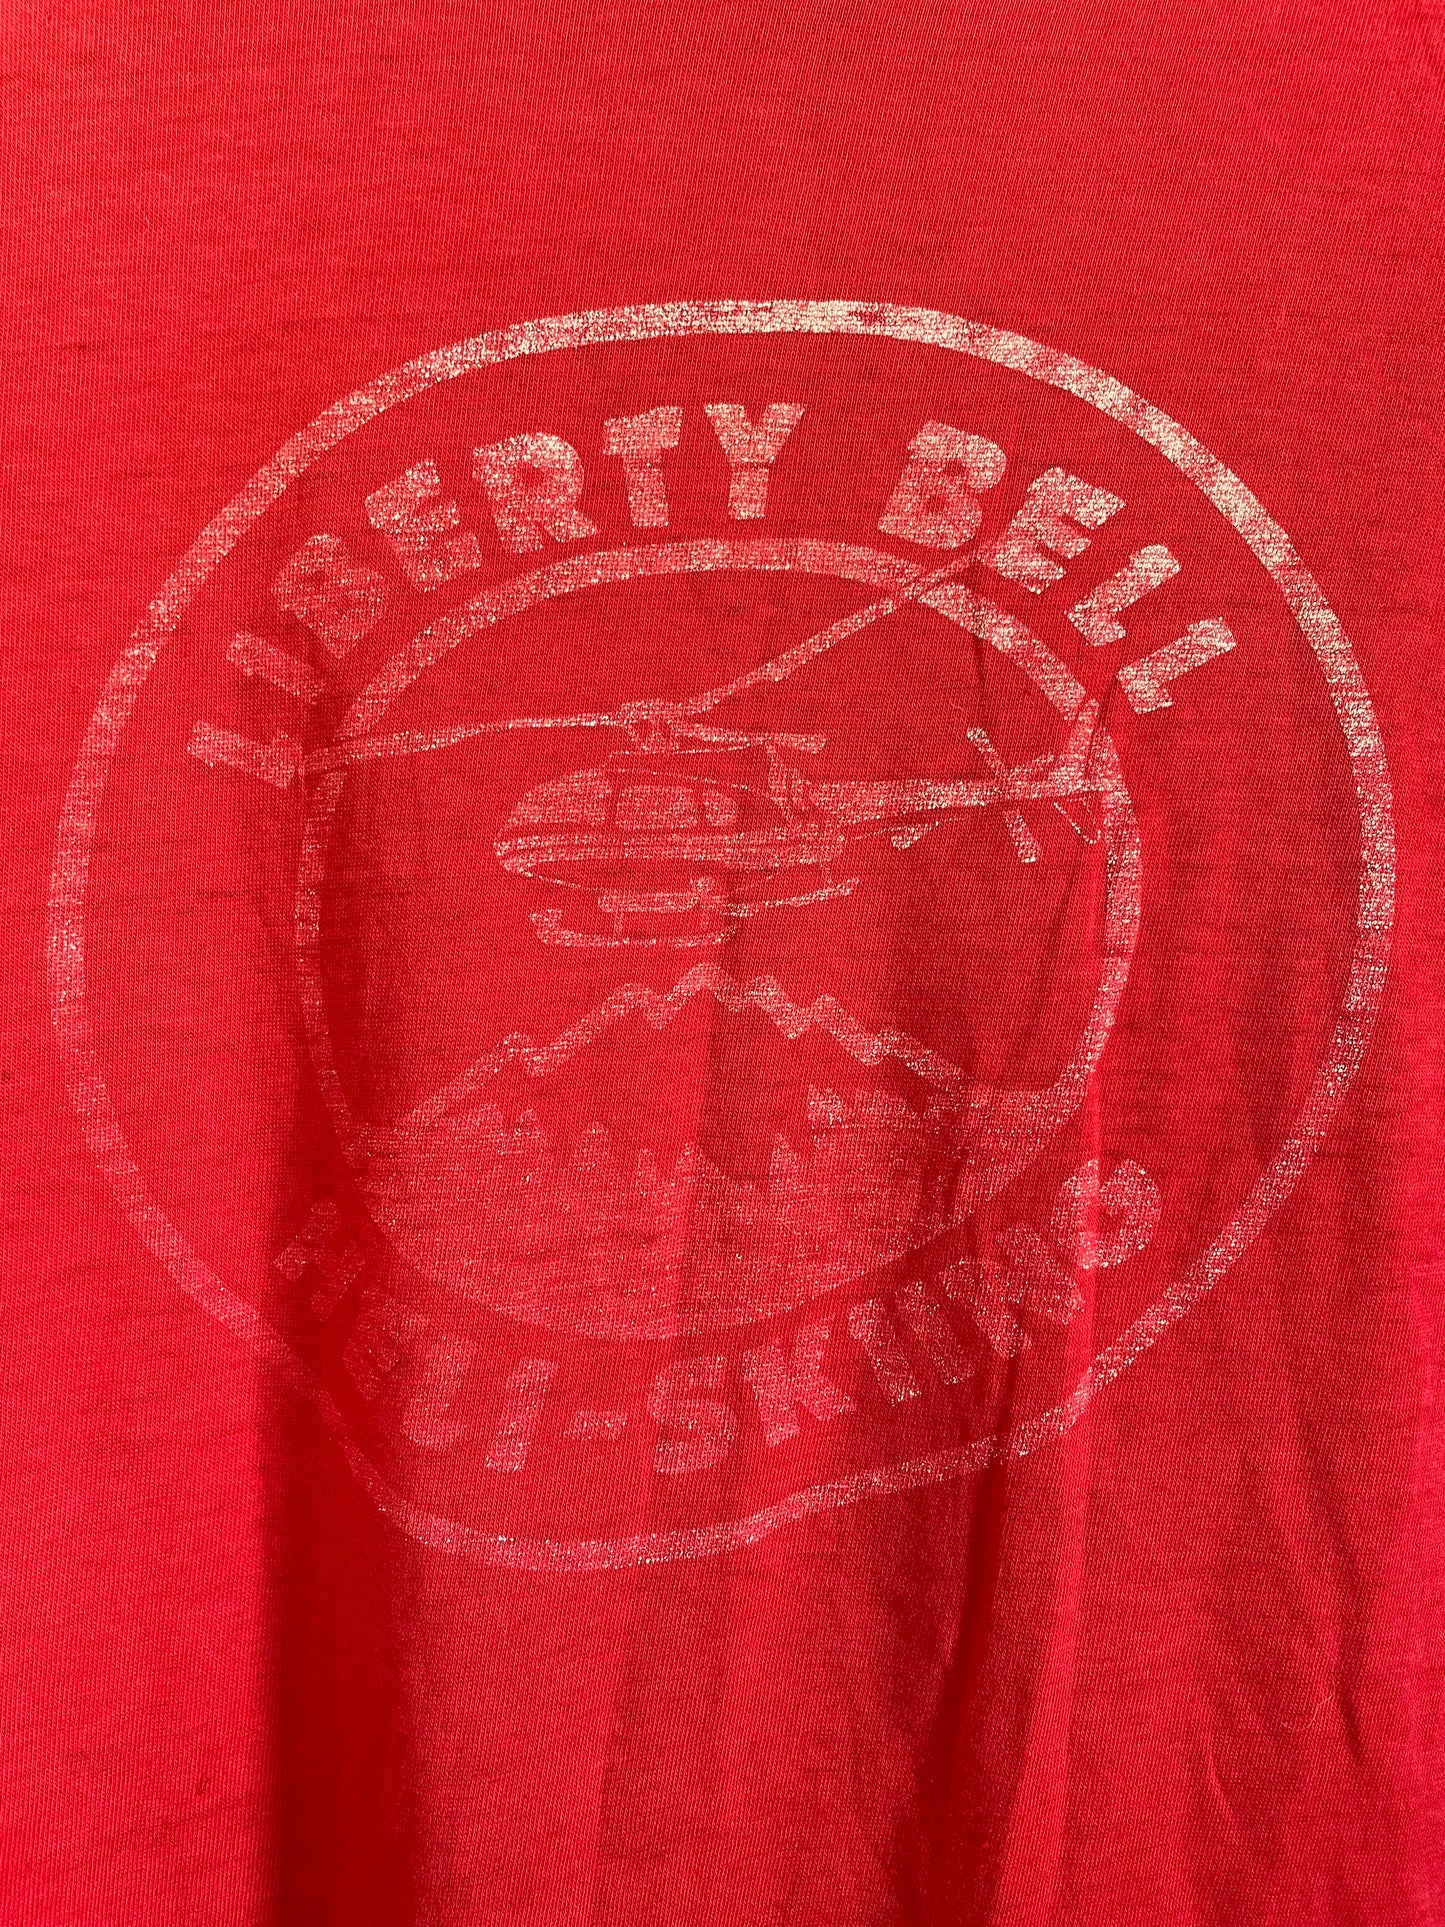 80s Liberty Bell Heli Skiiing Tee